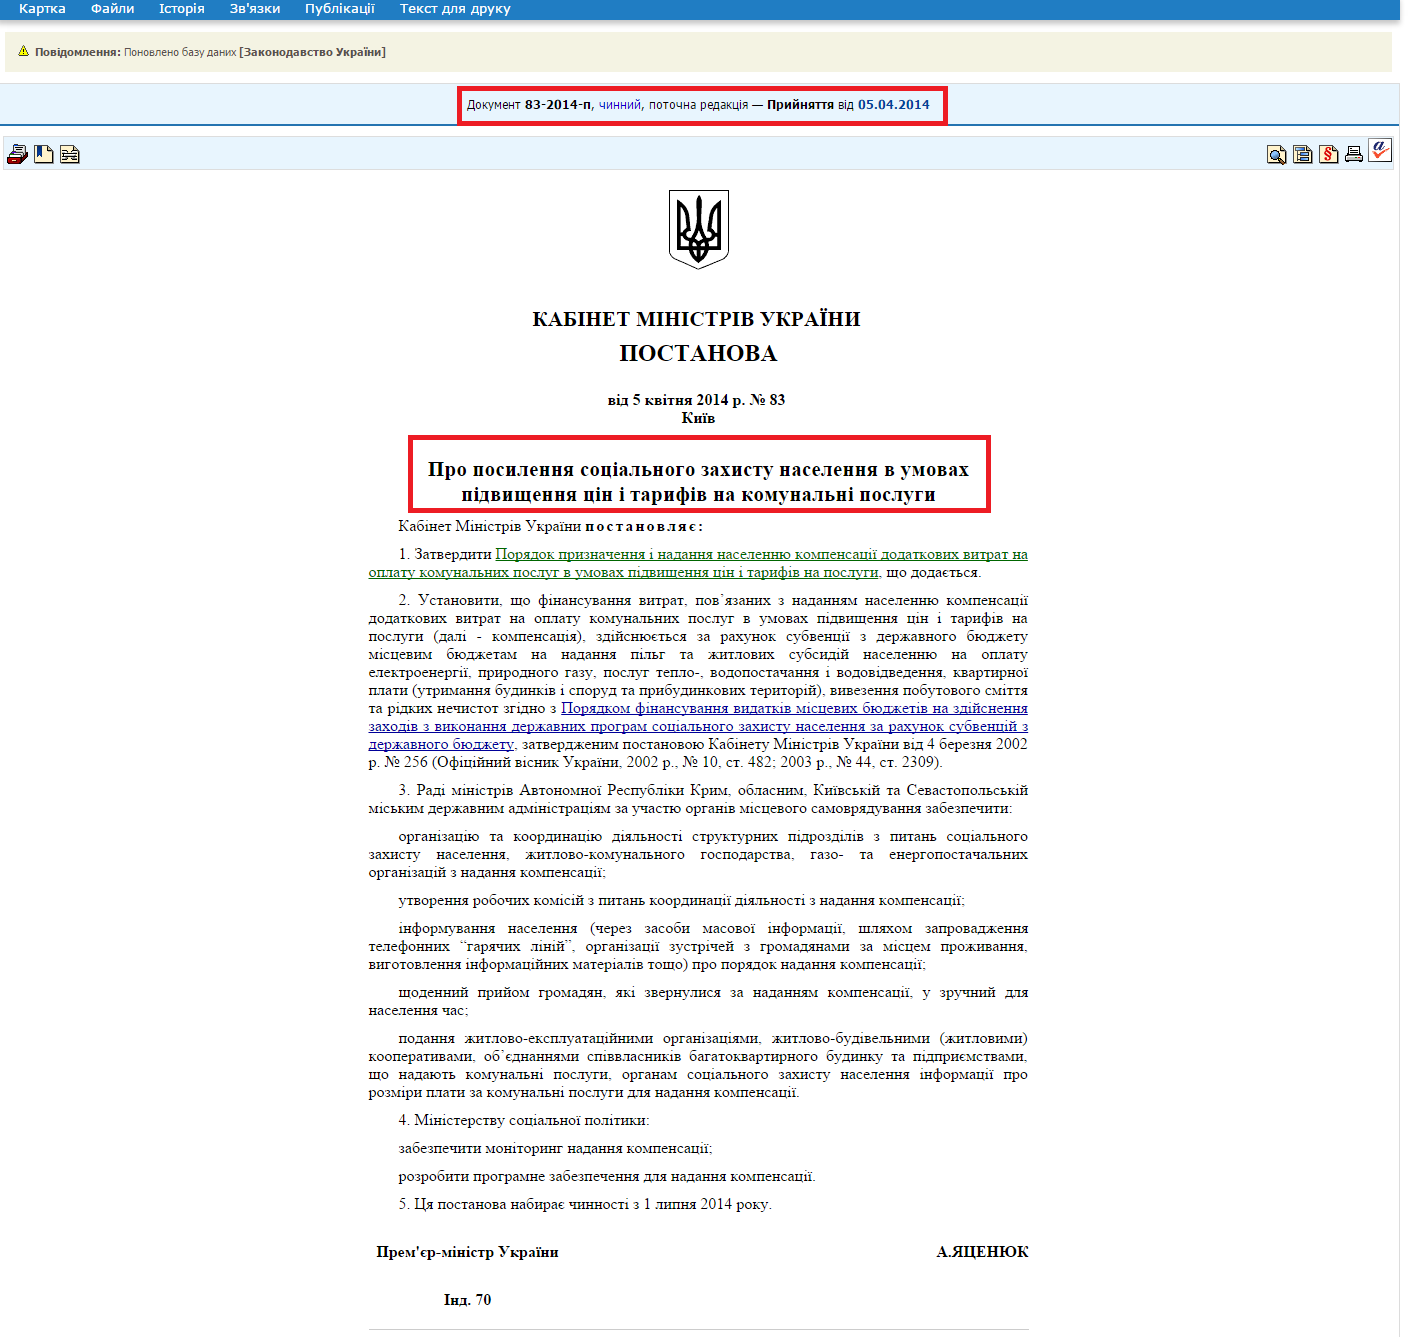 http://zakon4.rada.gov.ua/laws/show/83-2014-%D0%BF